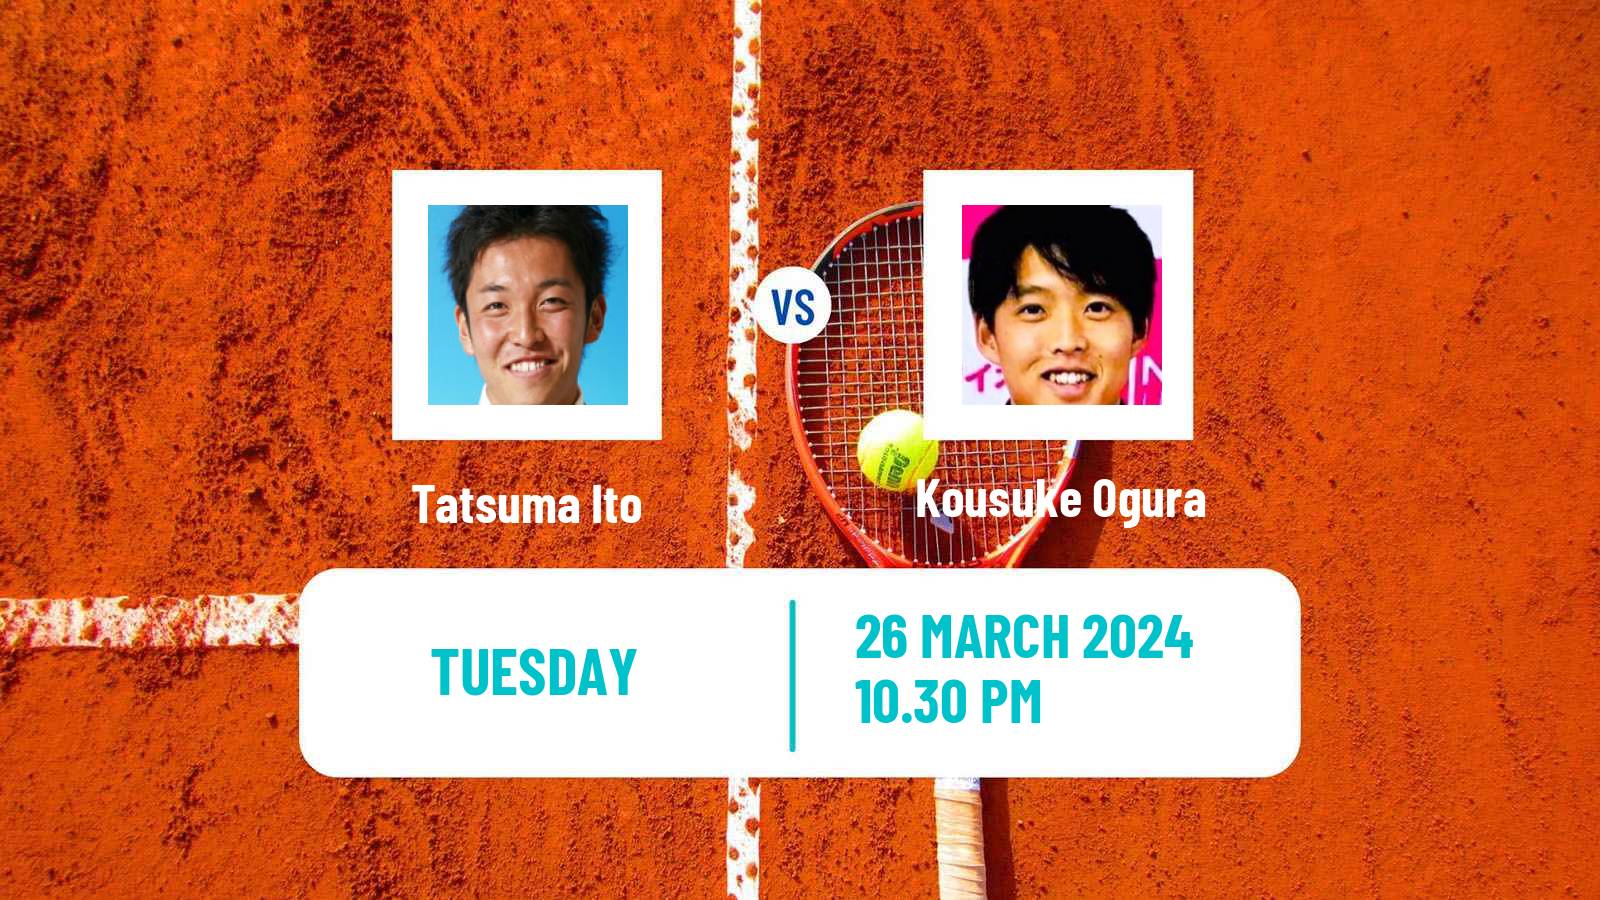 Tennis ITF M15 Tsukuba Men Tatsuma Ito - Kousuke Ogura